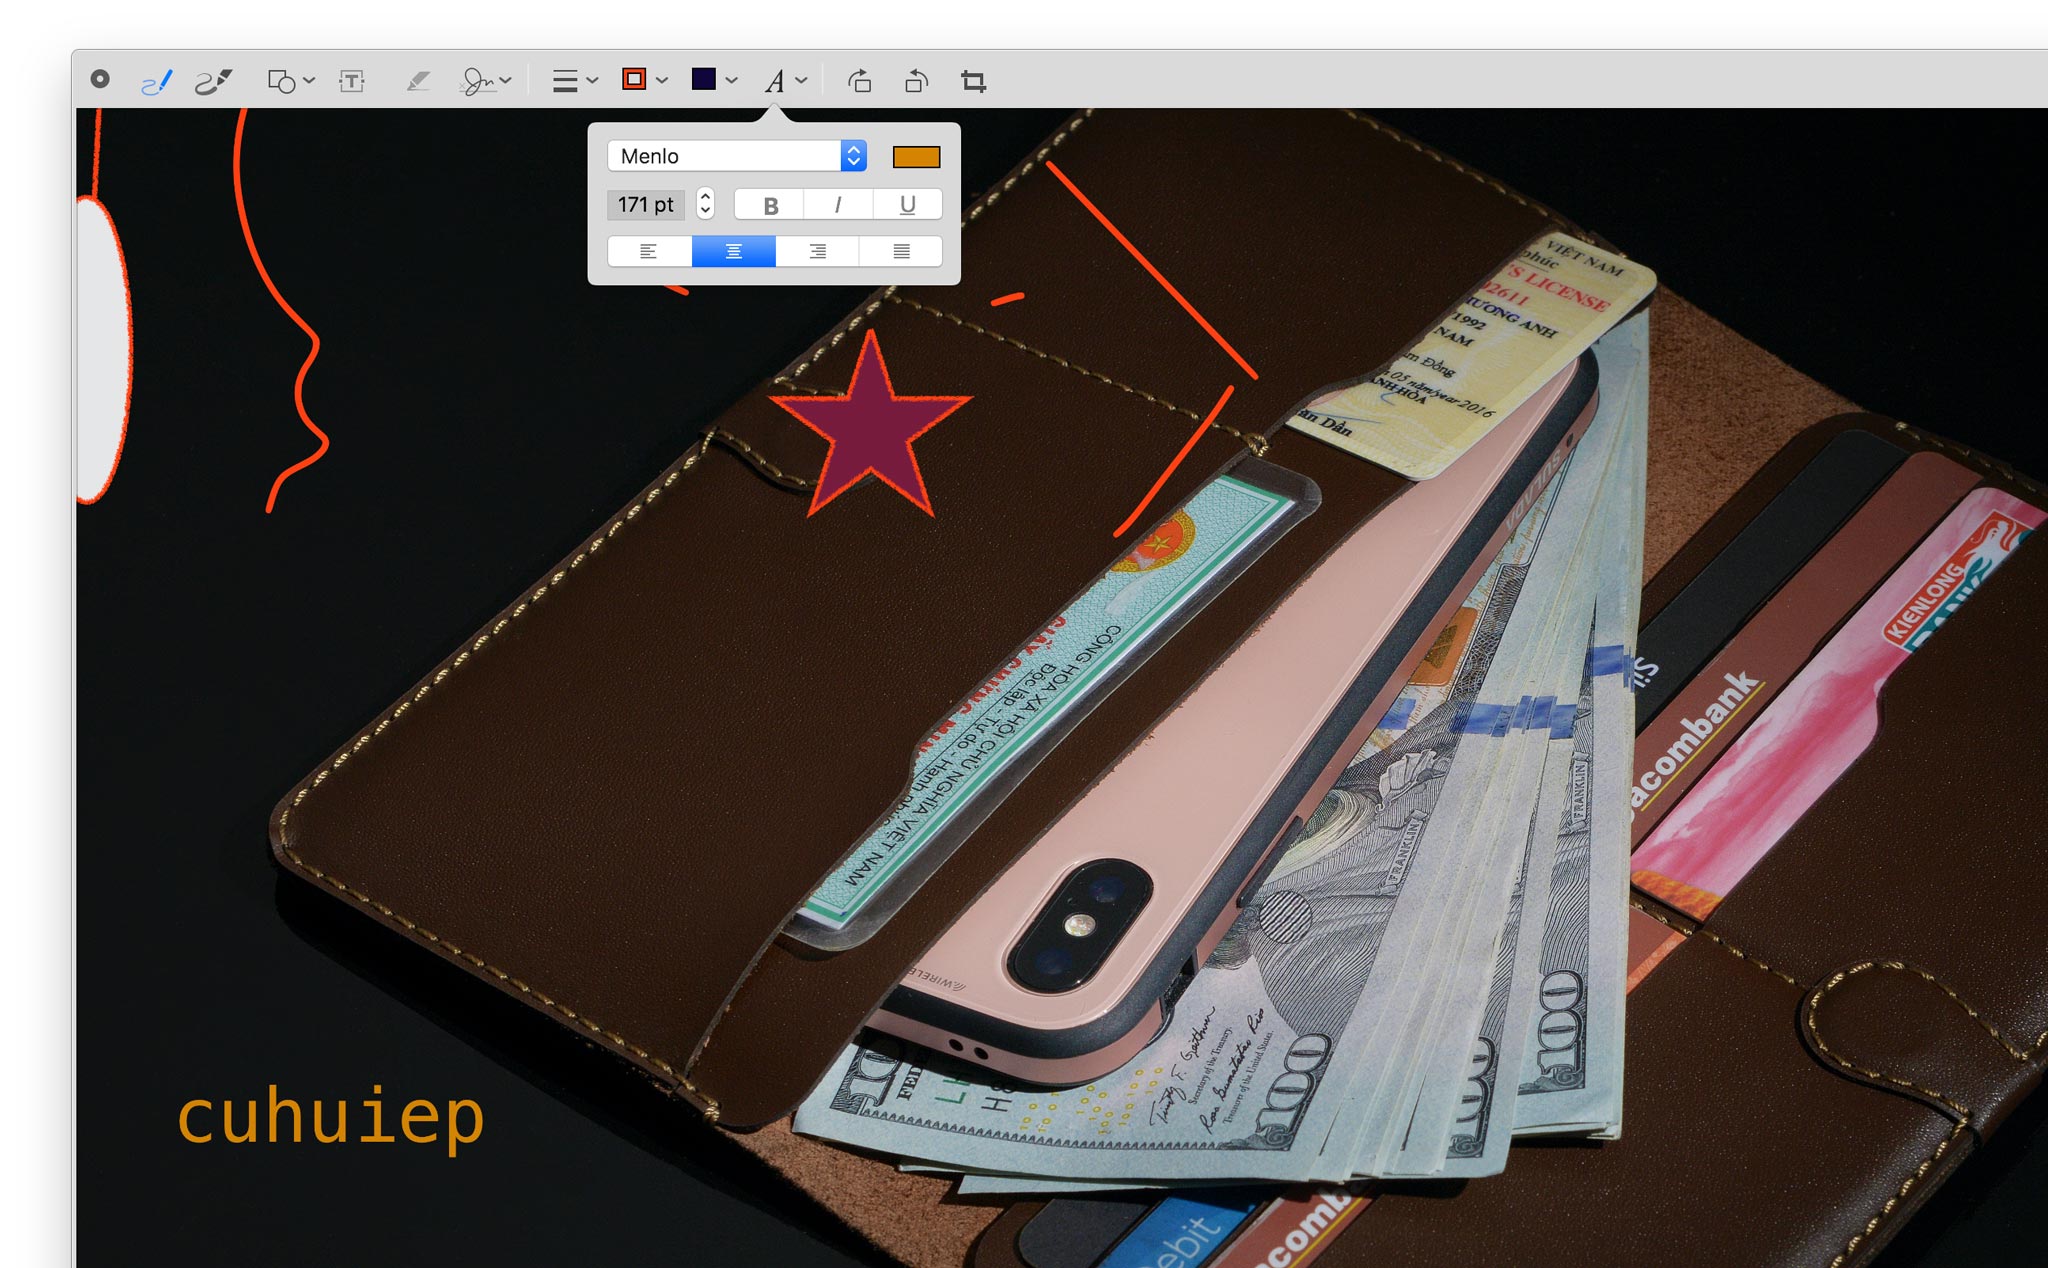 Dùng thử Quick Look trên macOS 10.14 Mojave: thêm nội dung, crop, xoay hình nhanh